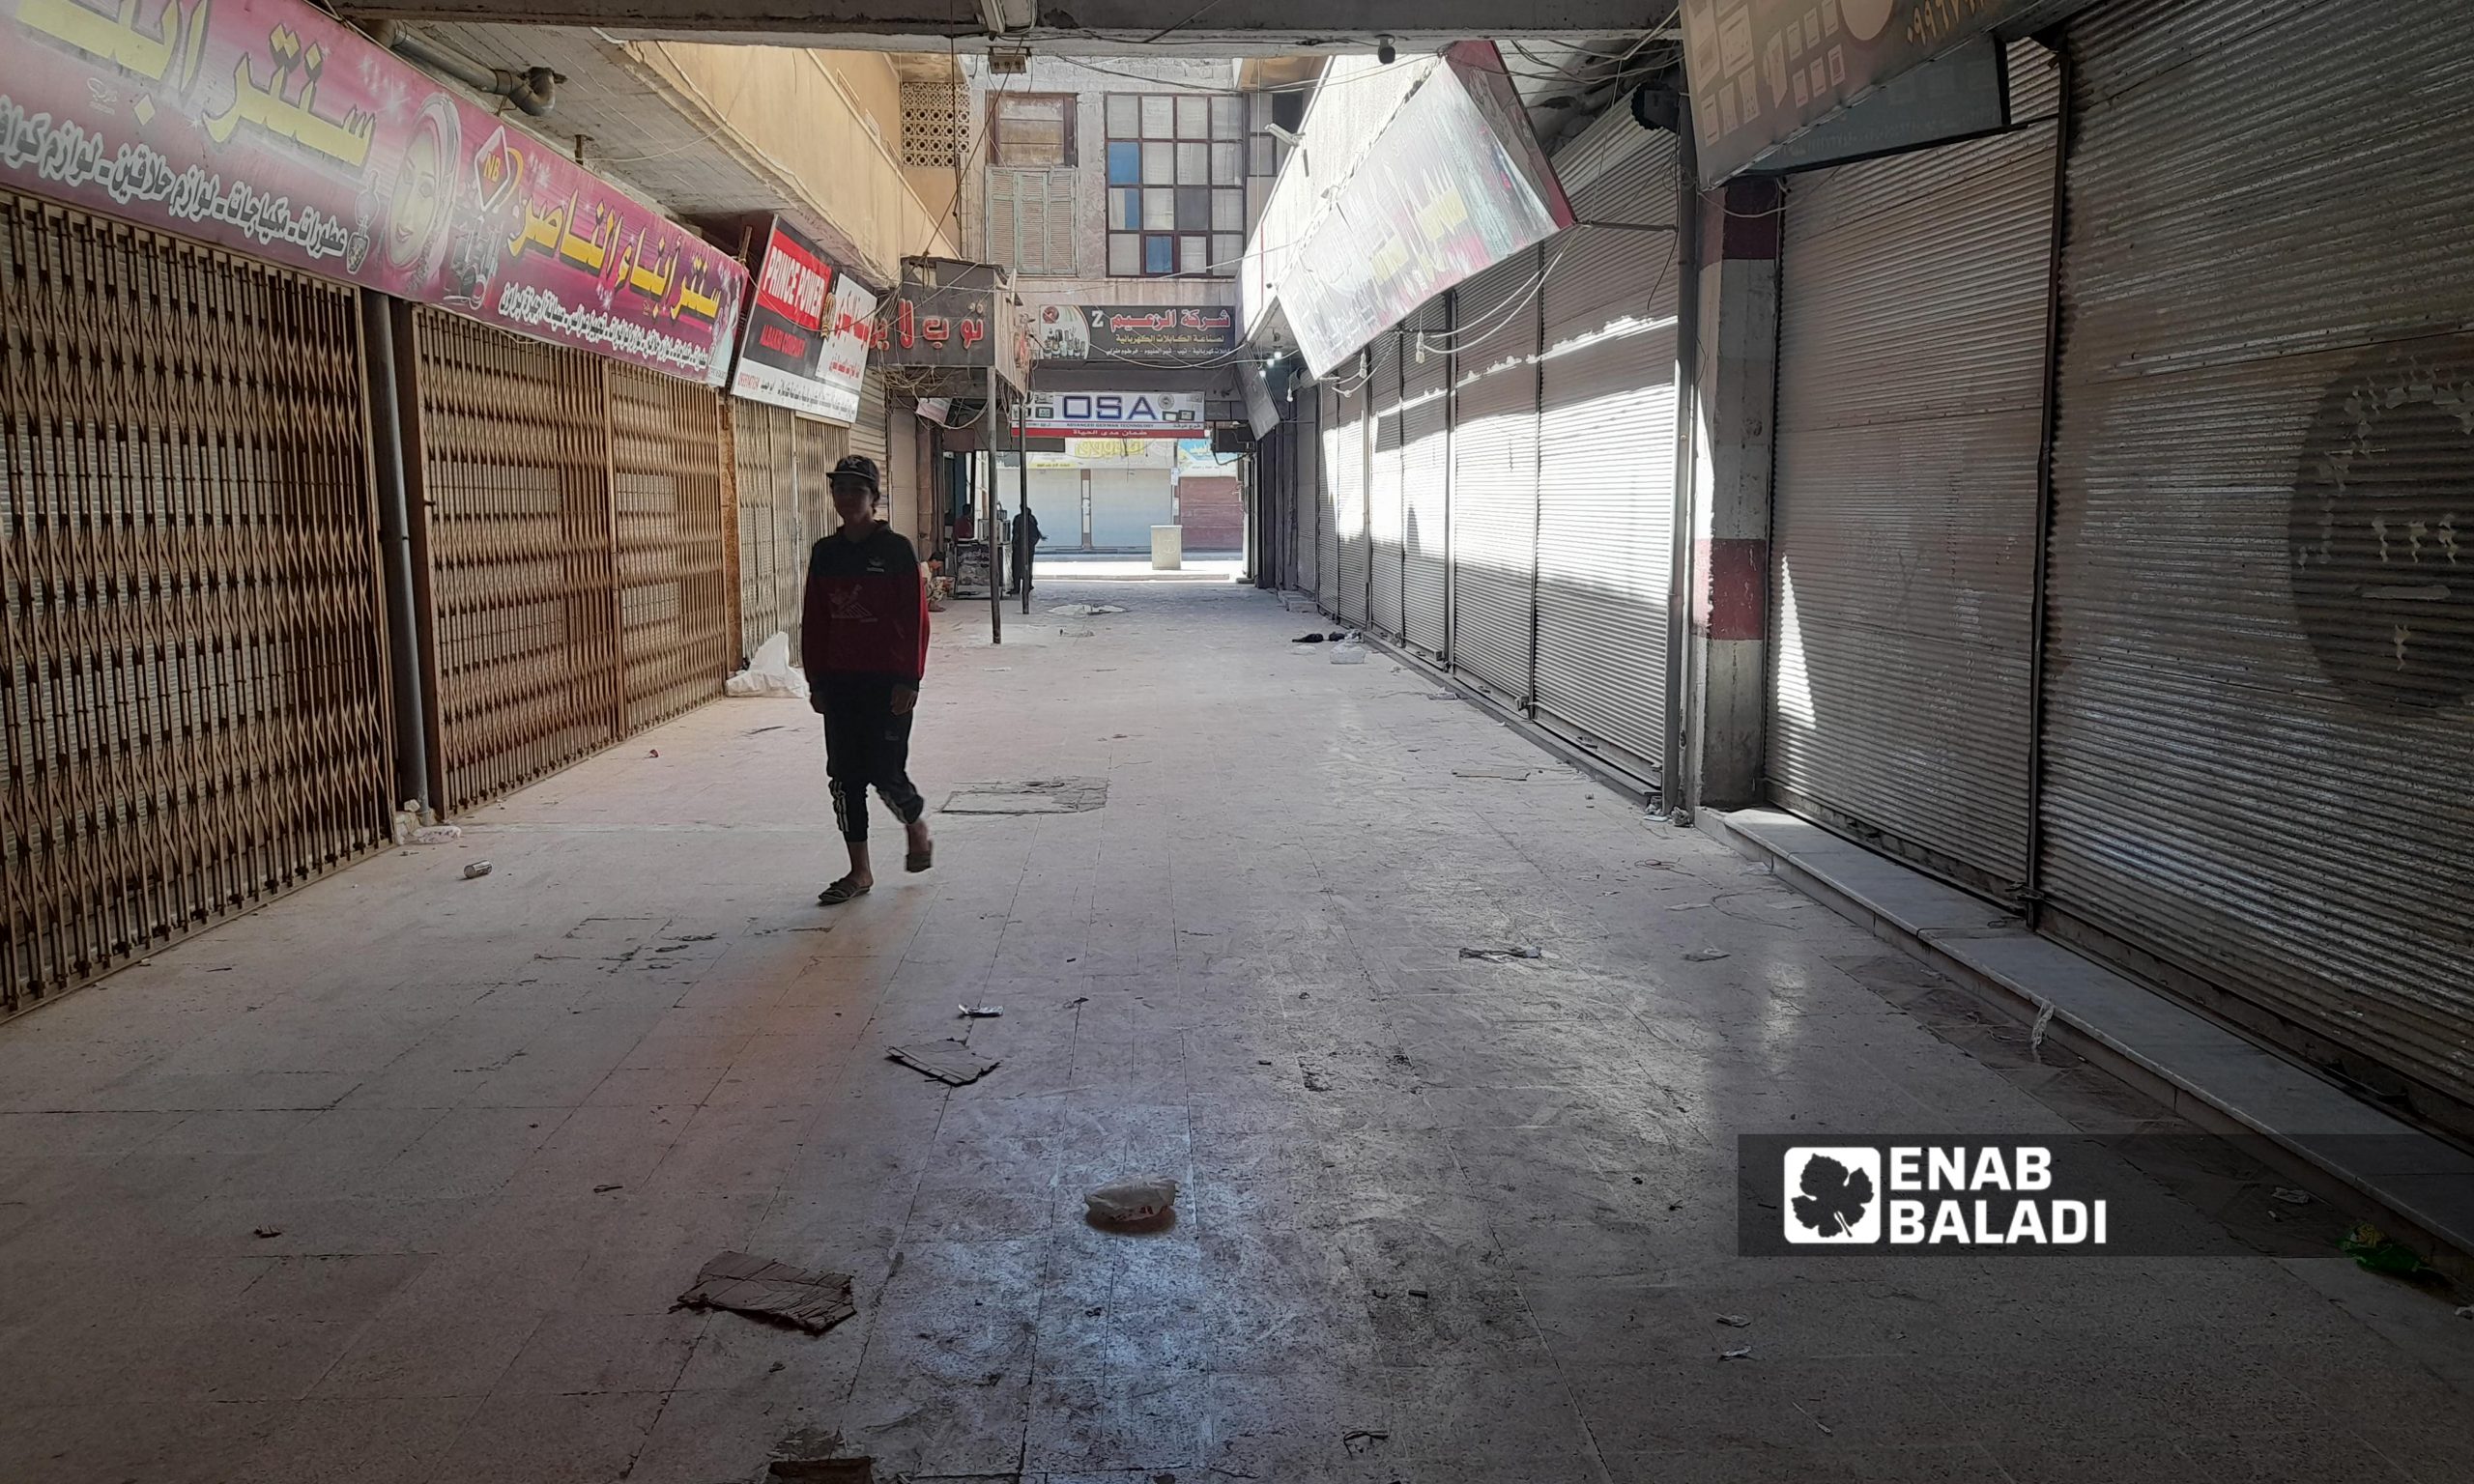 إغلاق الأسواق والمحال التجارية في مدينة الرقة بعد فرض حظر تجوال كلي من قبل الإدارة الذاتية - 27 أيلول 2021 ( عنب بلدي / حسام العمر)